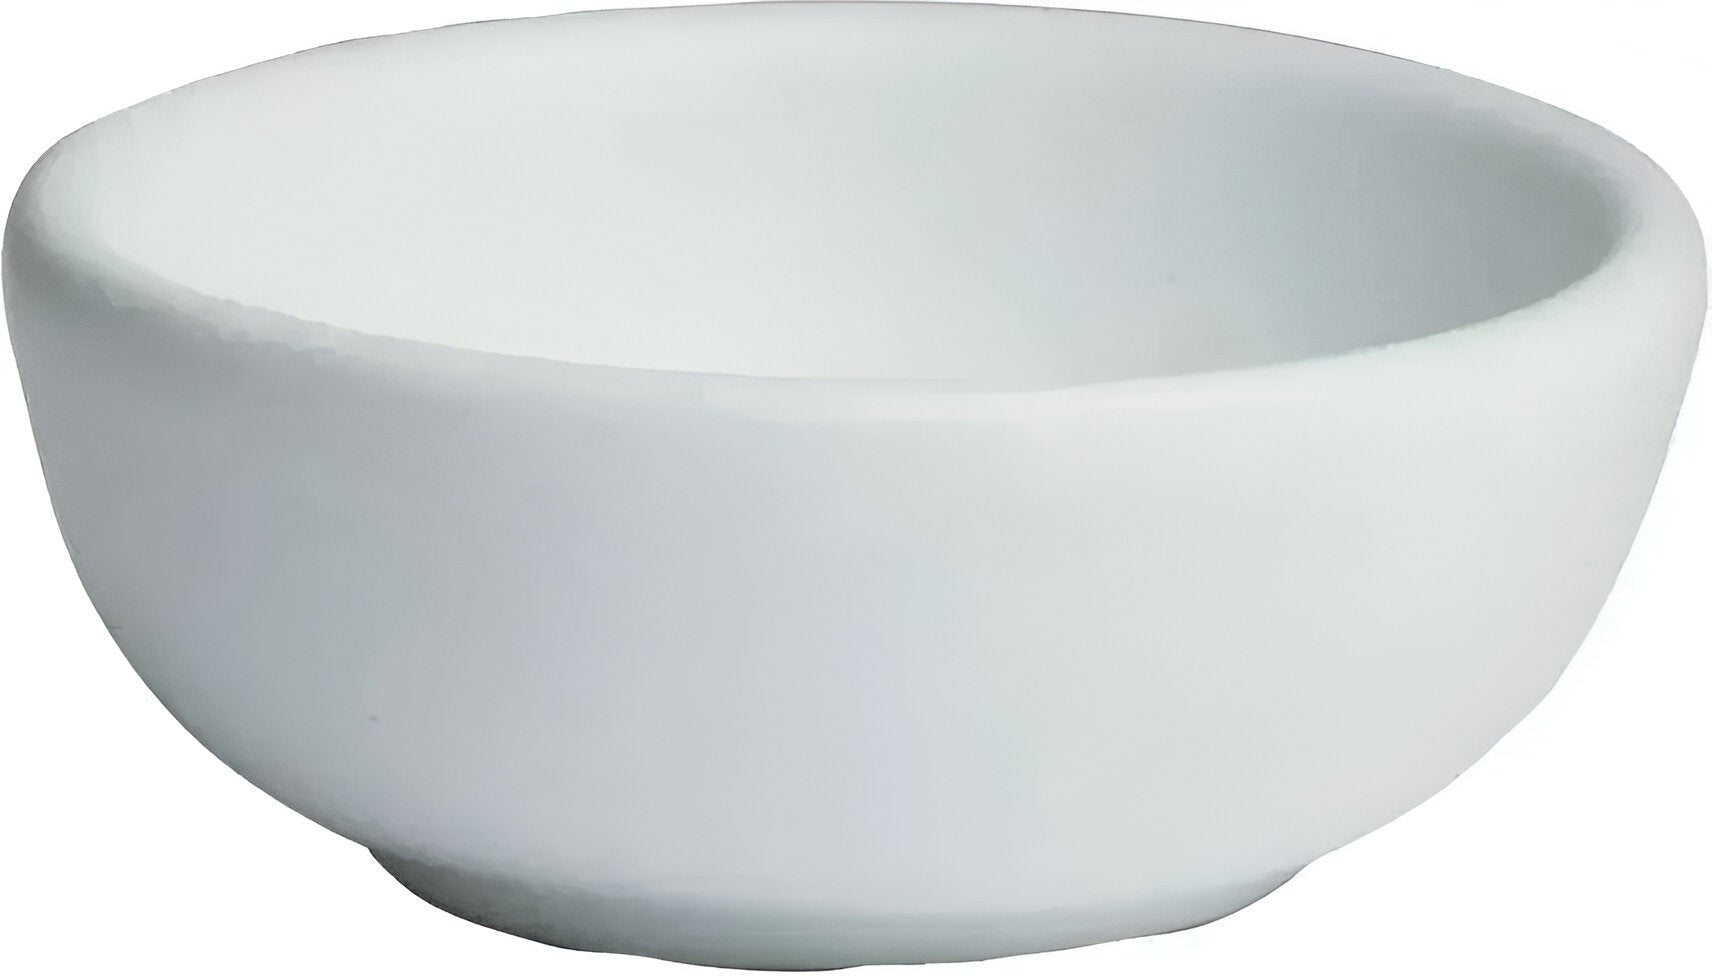 Bugambilia - Classic 5.07 Oz X-Small White Round Rice Bowl With Elegantly Textured - MAK03WW